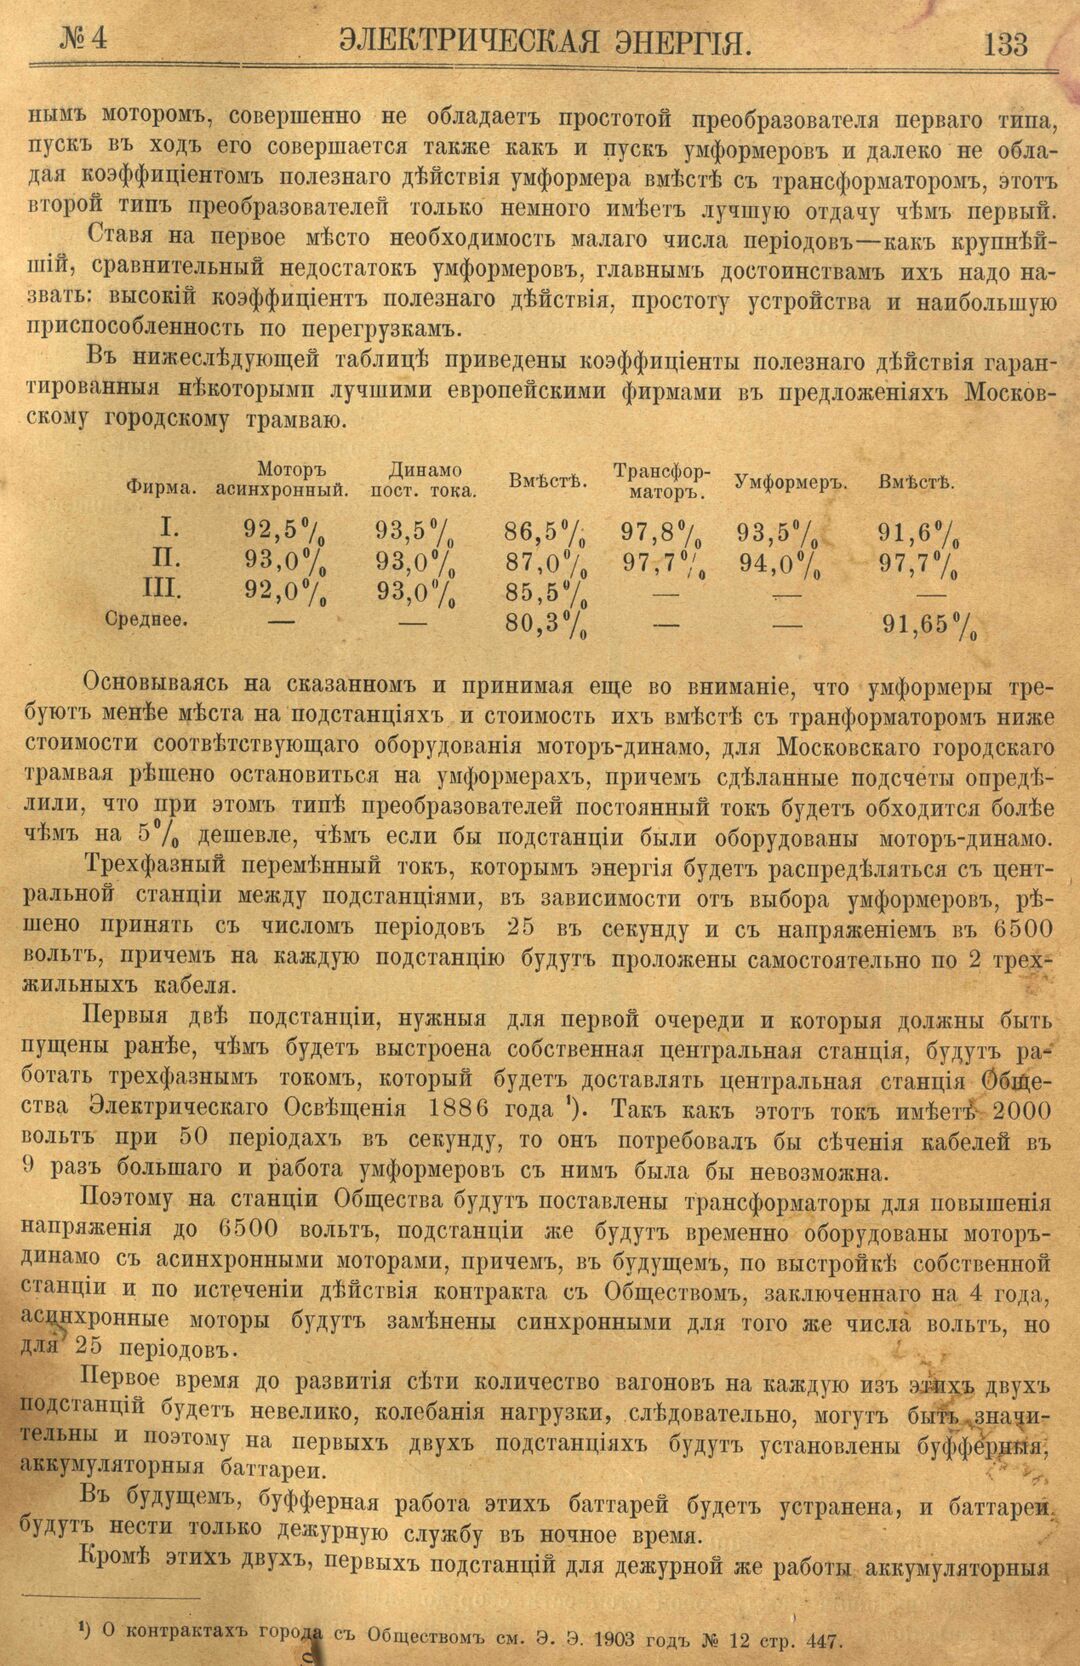 Рис. 1. Журнал Электрическая Энергiя, 4 номер, апрель, 1904 года, страница 133